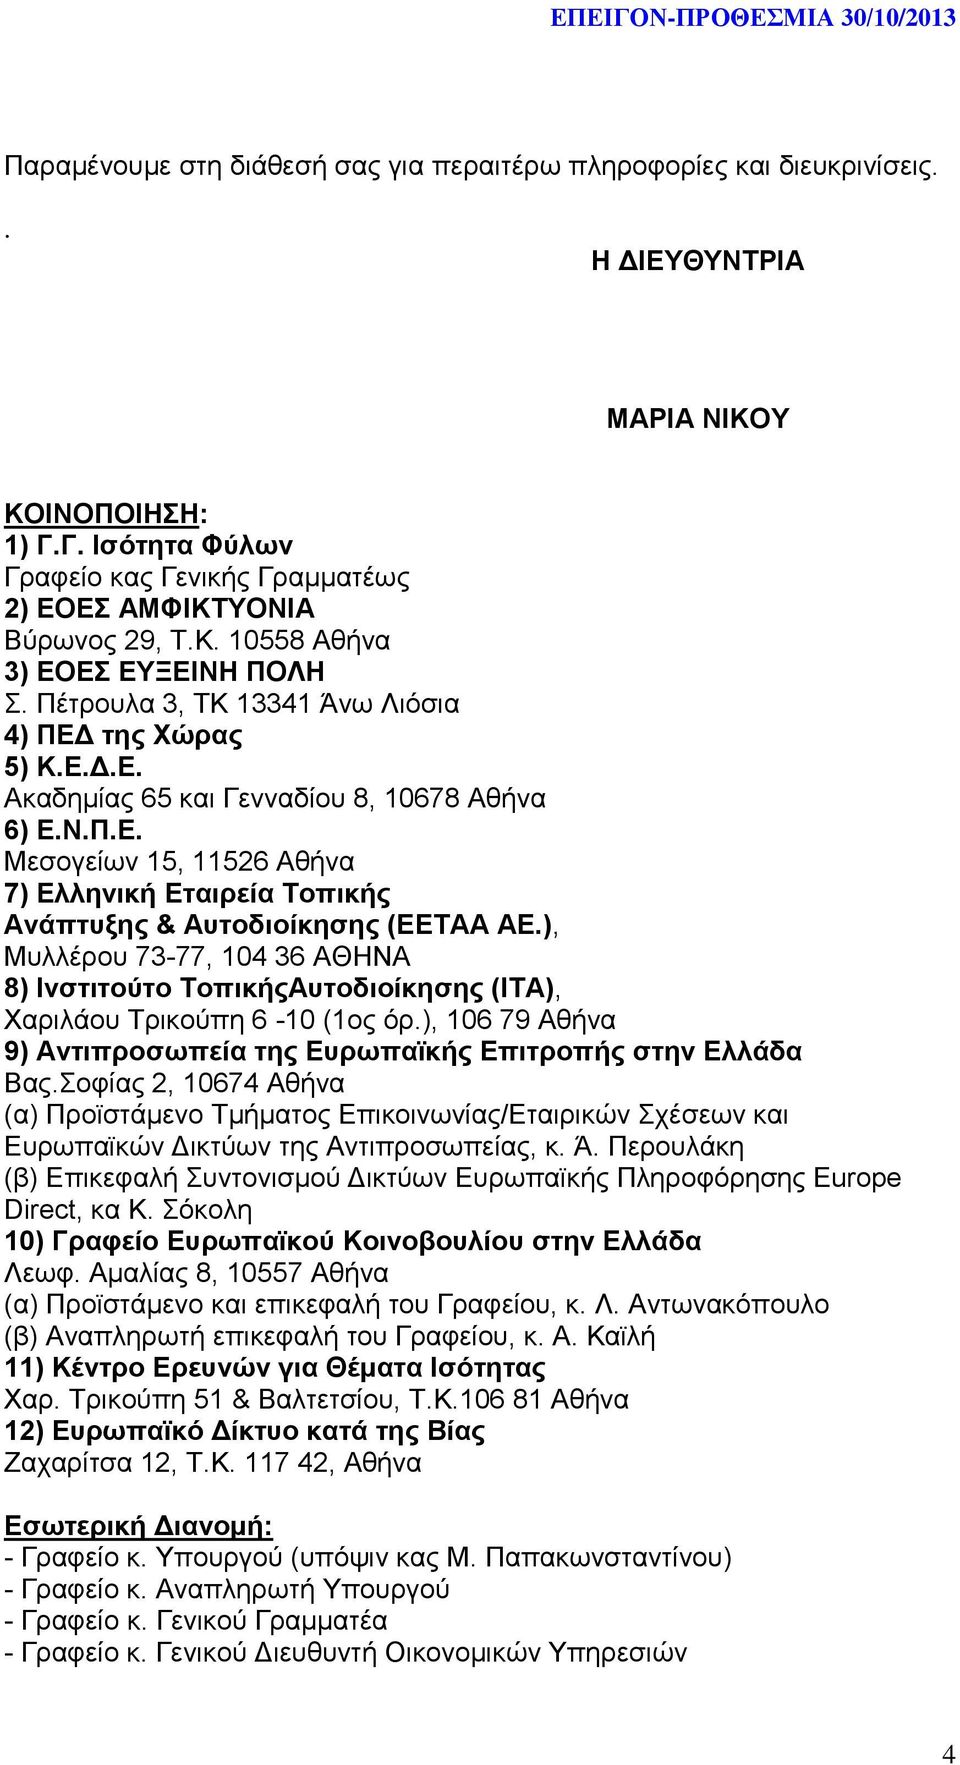 ), Μυλλέρου 73-77, 104 36 ΑΘΗΝΑ 8) Ινστιτούτο ΤοπικήςΑυτοδιοίκησης (ΙΤΑ), Χαριλάου Τρικούπη 6-10 (1ος όρ.), 106 79 Αθήνα 9) Αντιπροσωπεία της Ευρωπαϊκής Επιτροπής στην Ελλάδα Βας.